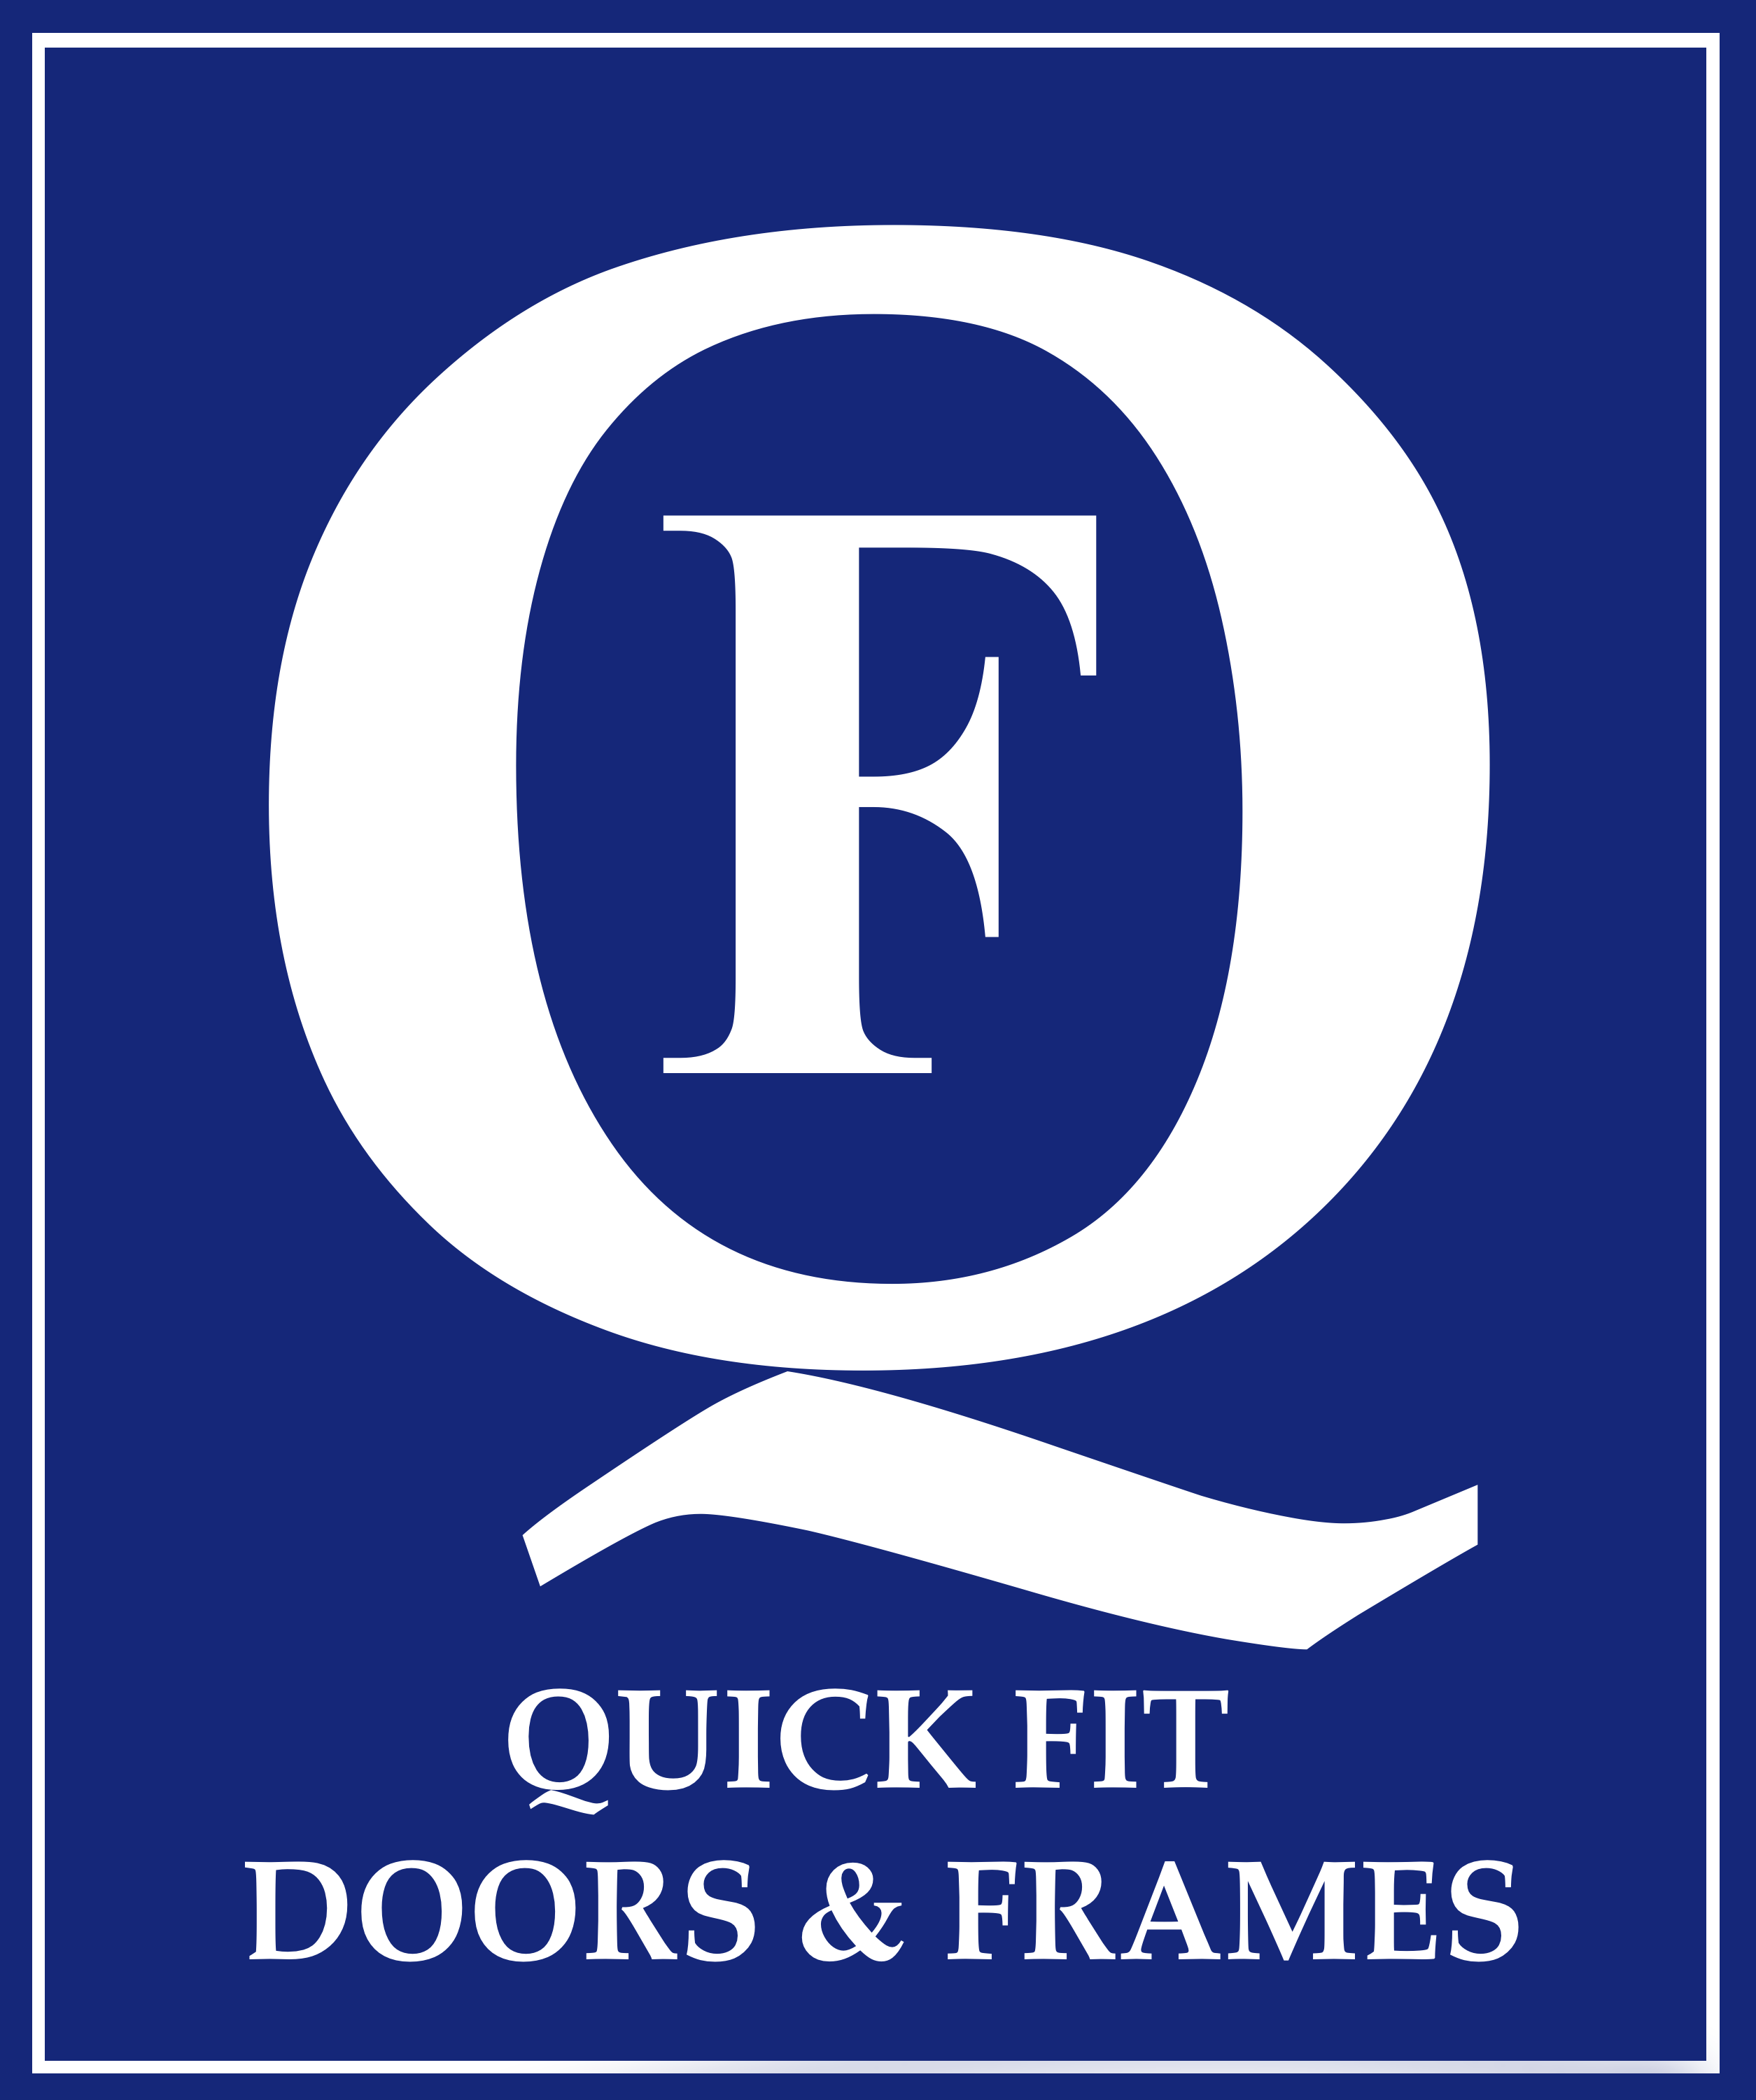 Quick Fit Doors & Frames logo